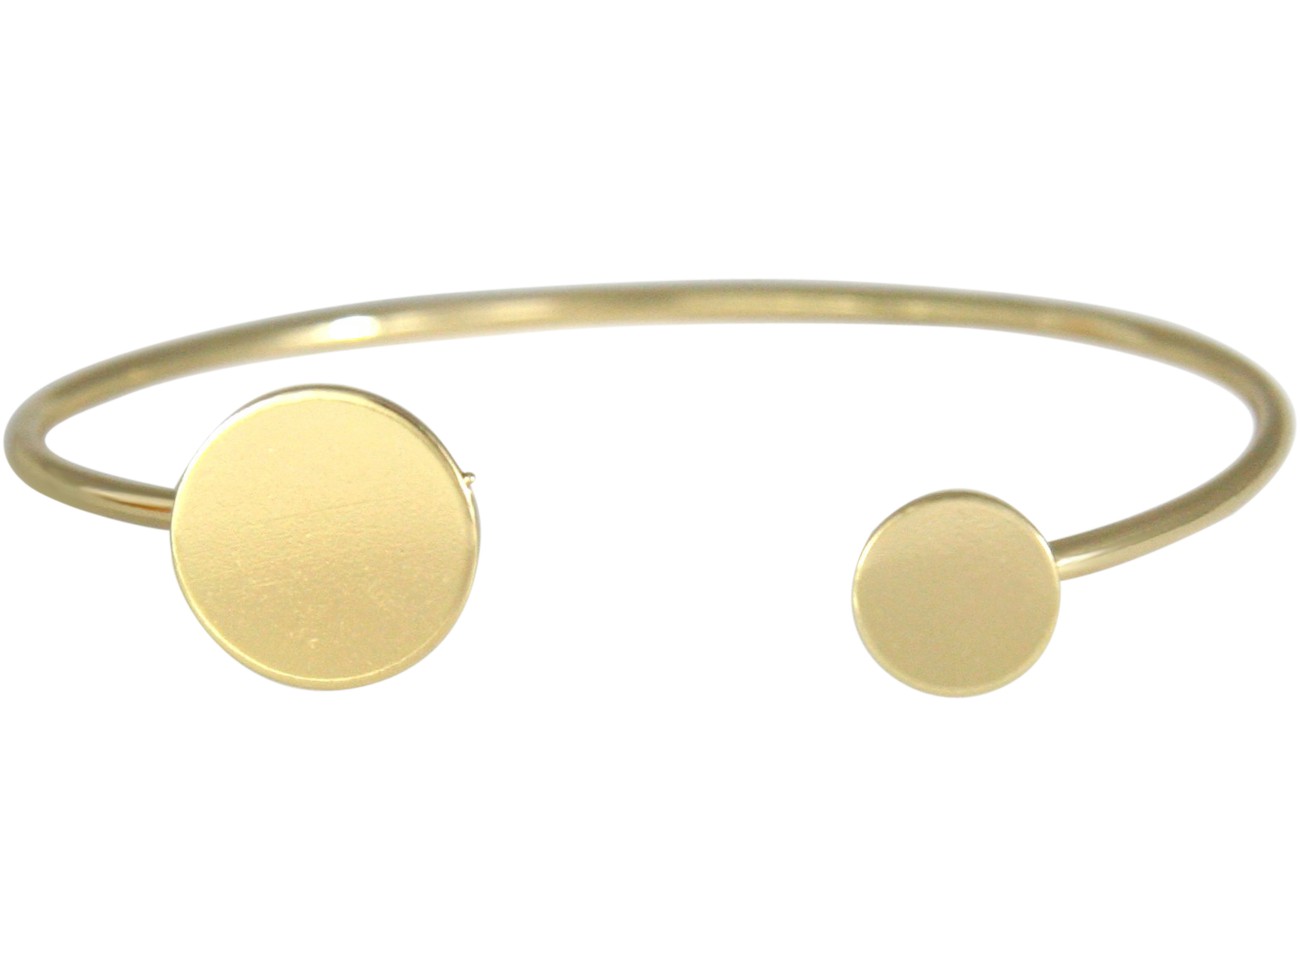 Armband vergoldet mit jeweils zwei unterschiedlich großen kleinen Talern am Ende, Gemshine Damenarmreif Goldkreise Design modern